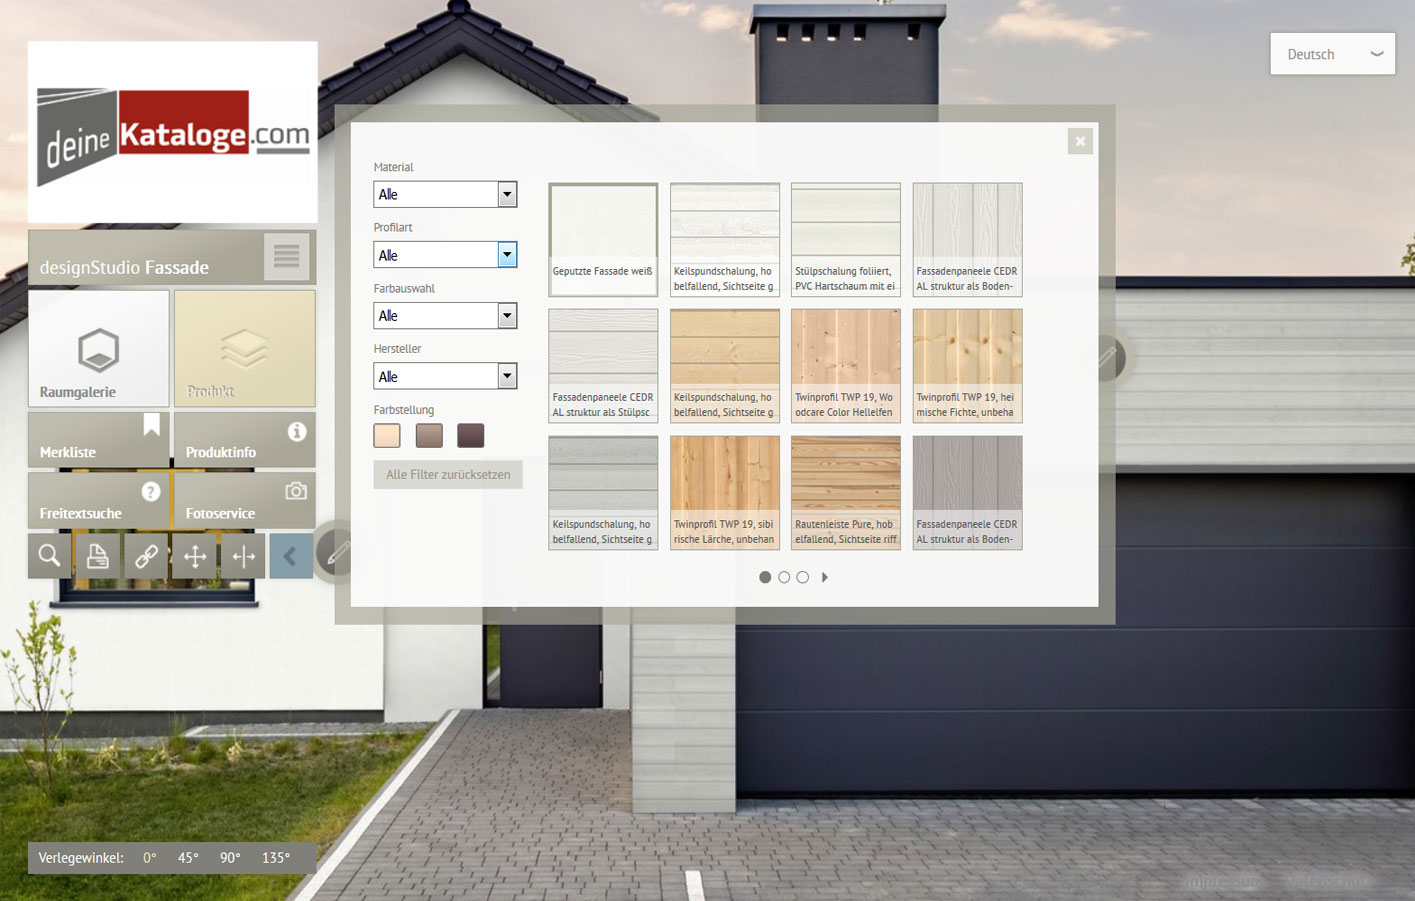 Das designStudio für Fassaden - Holz-Fassaden, PVC-Fassaden, WPC-Fassaden, Faserzement-Fassaden, Hausfassade online gestalten